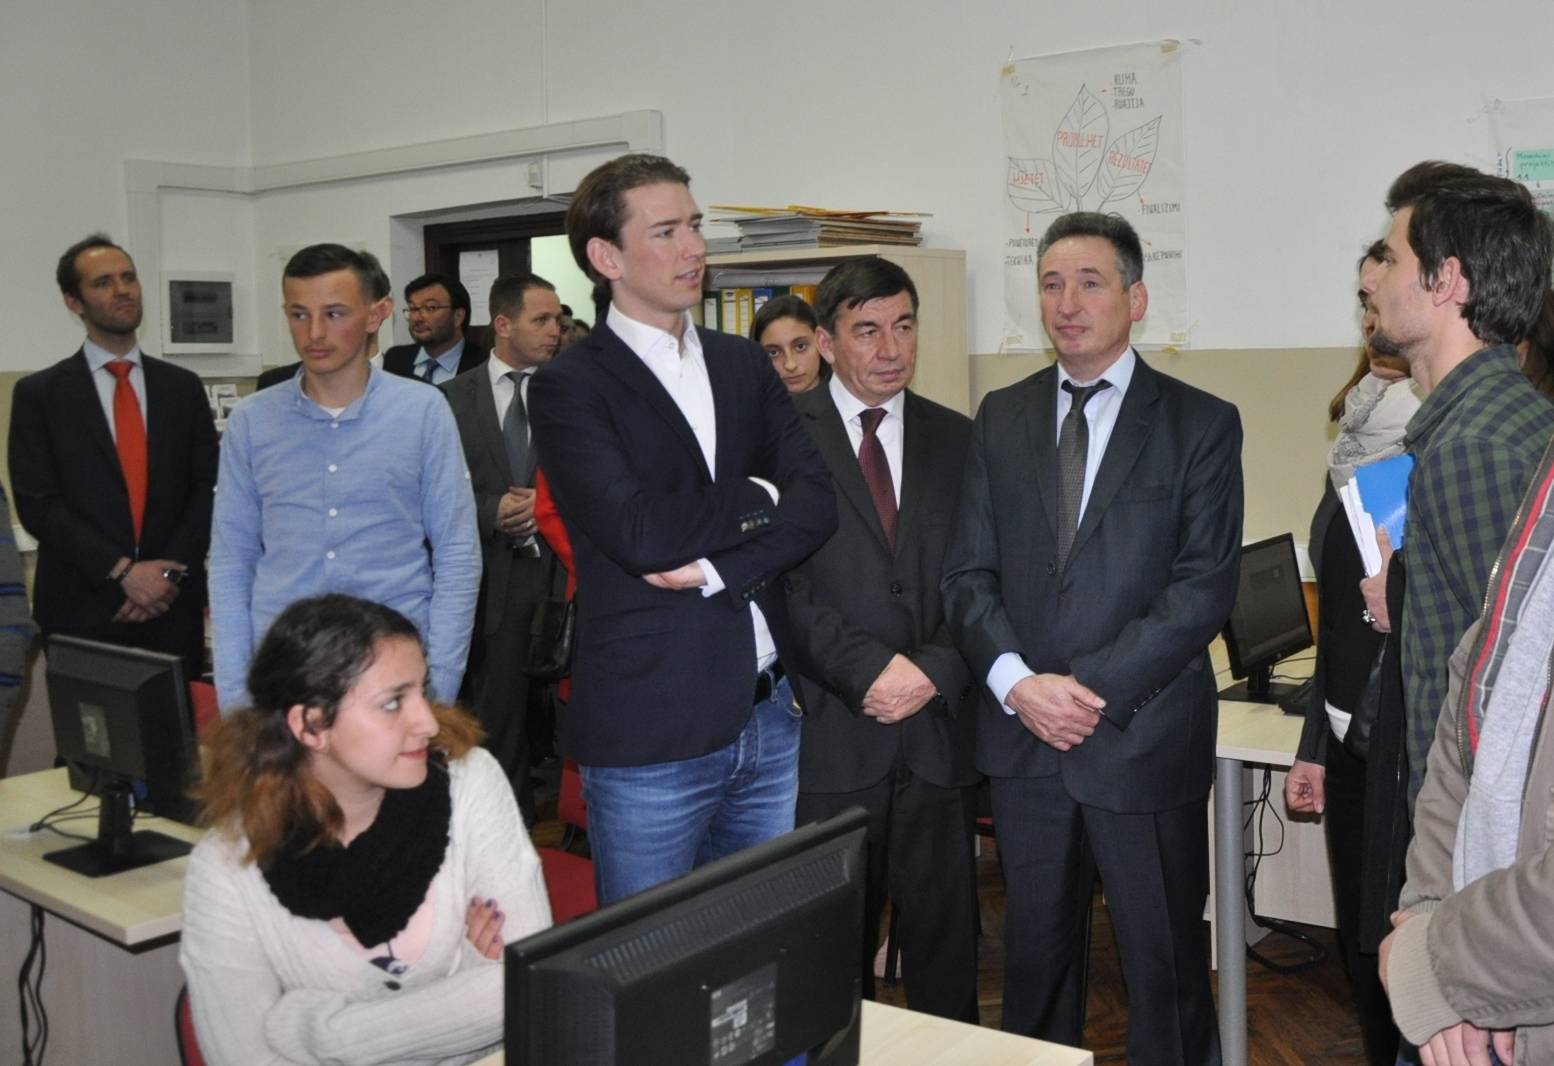 Austria do të ndihmojë Kosovën në reformimin e sektorit të arsimit